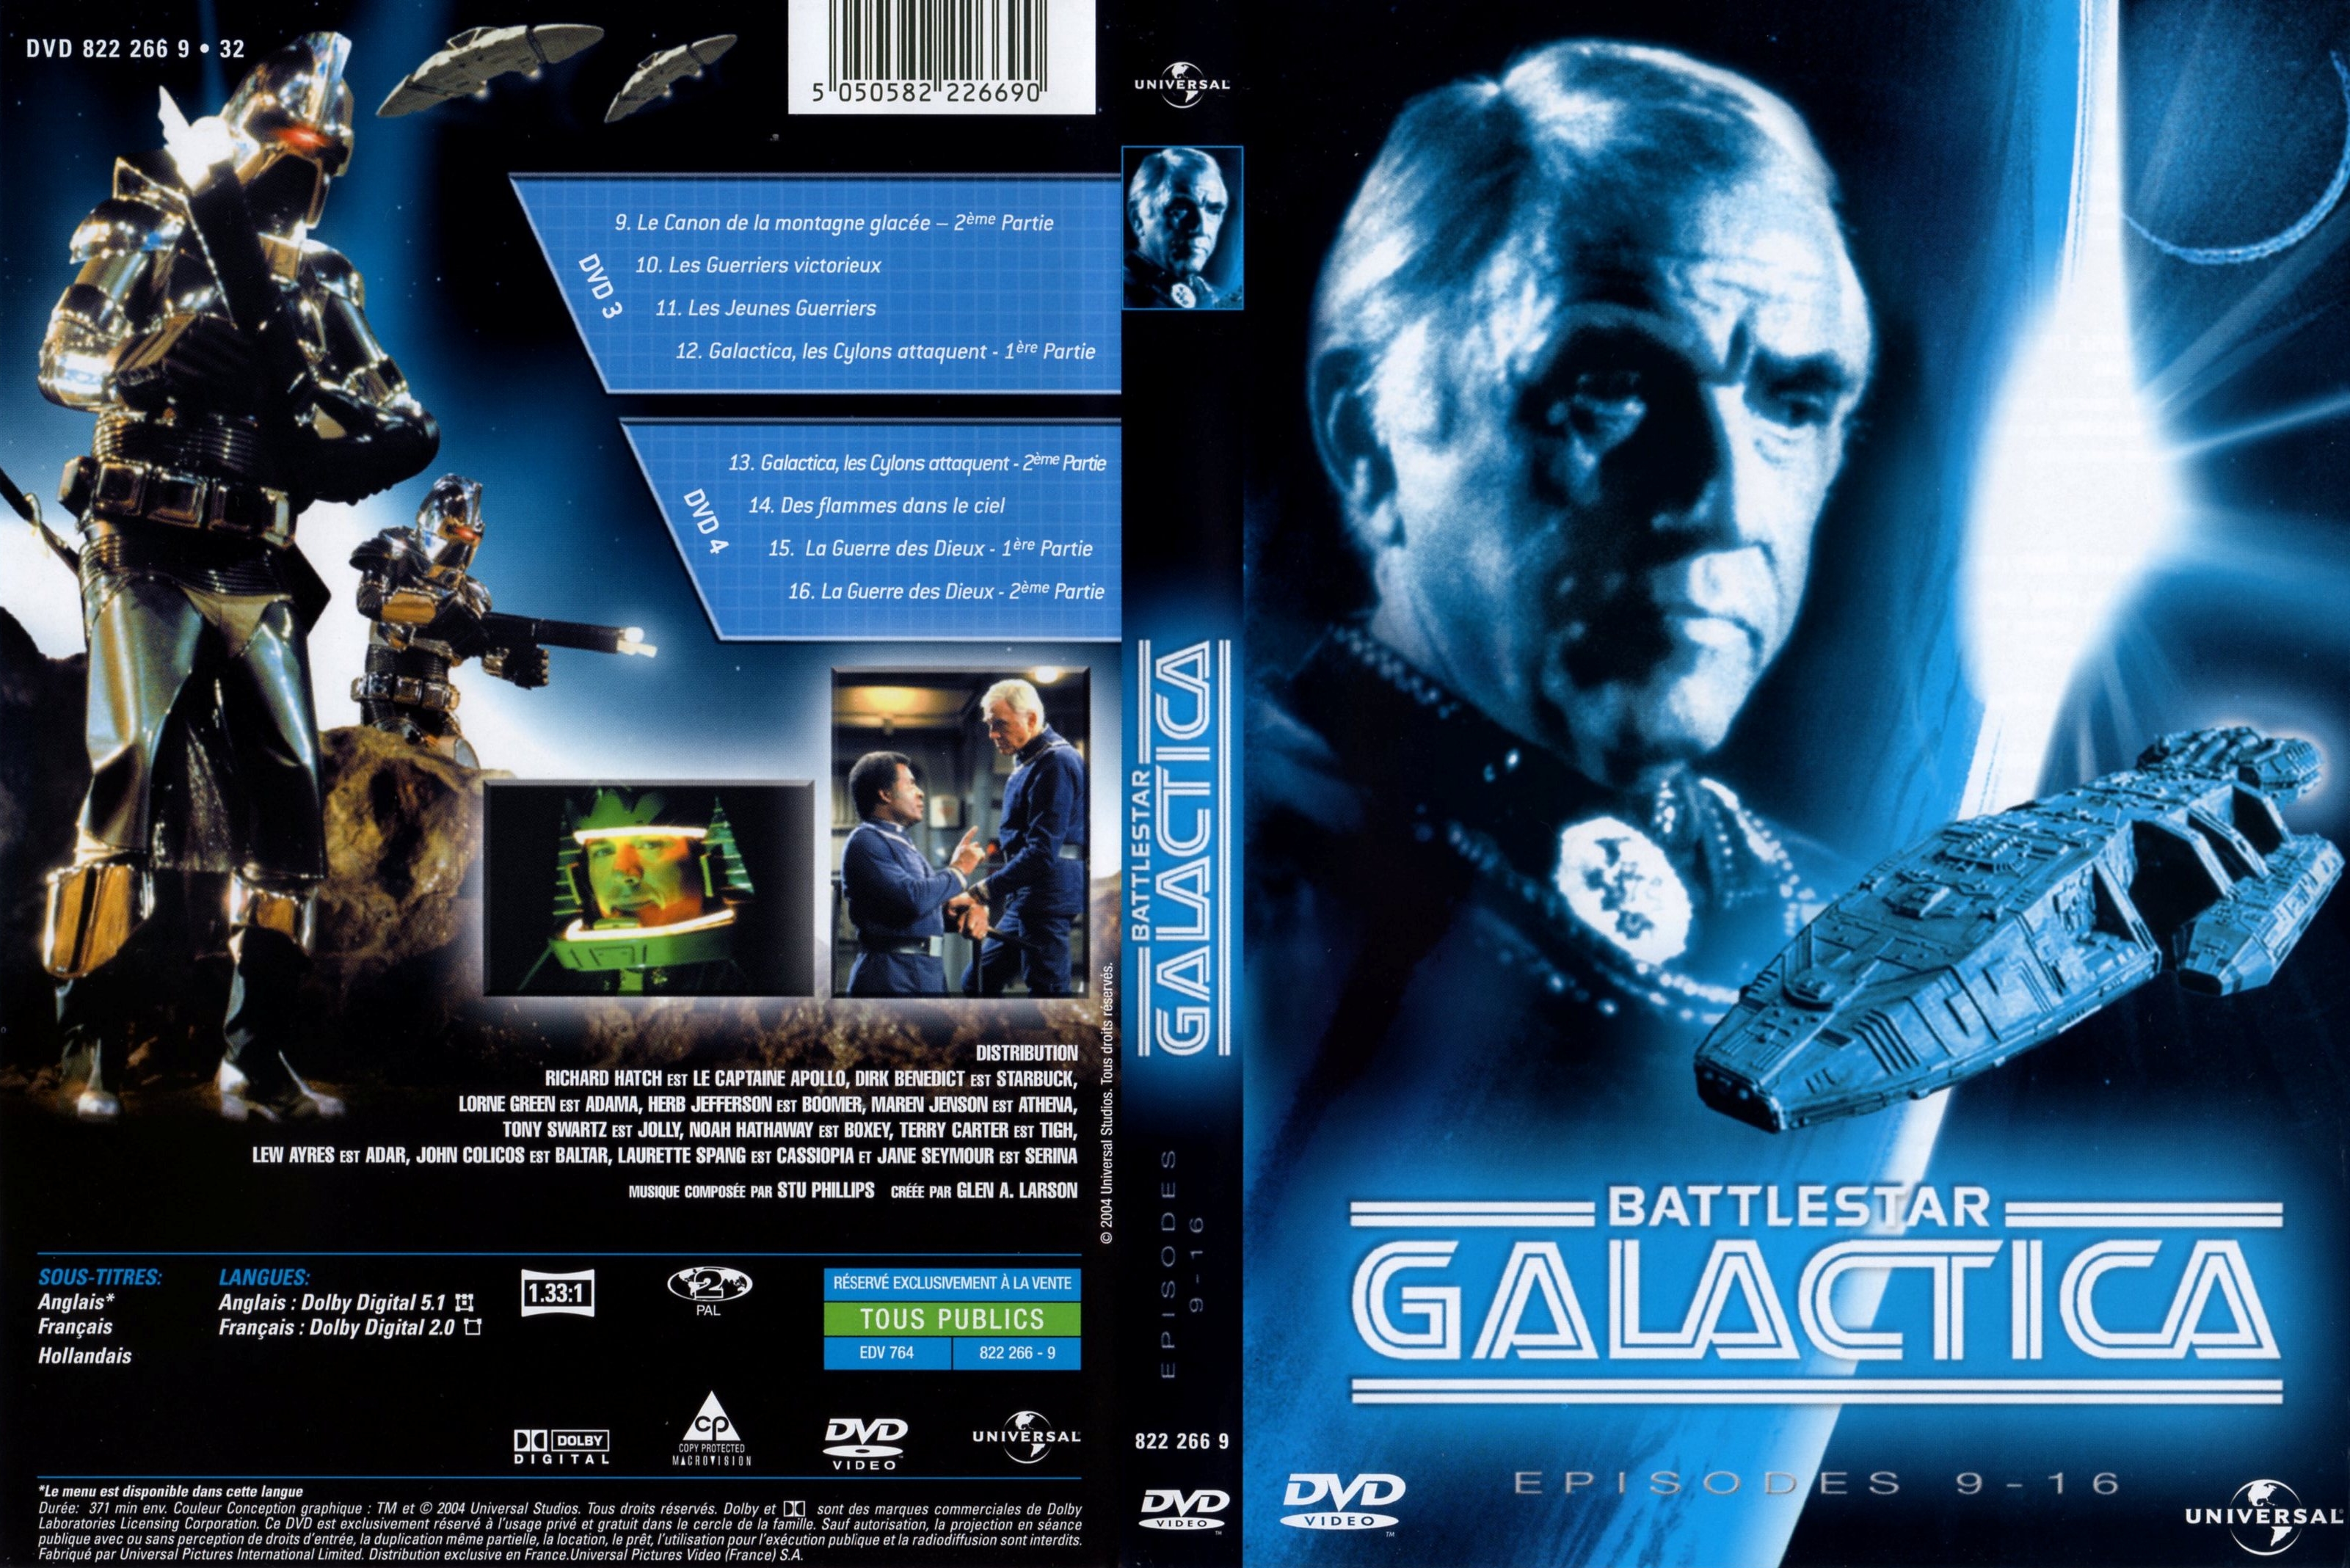 Jaquette DVD Battlestar galactica DVD 3 et 4